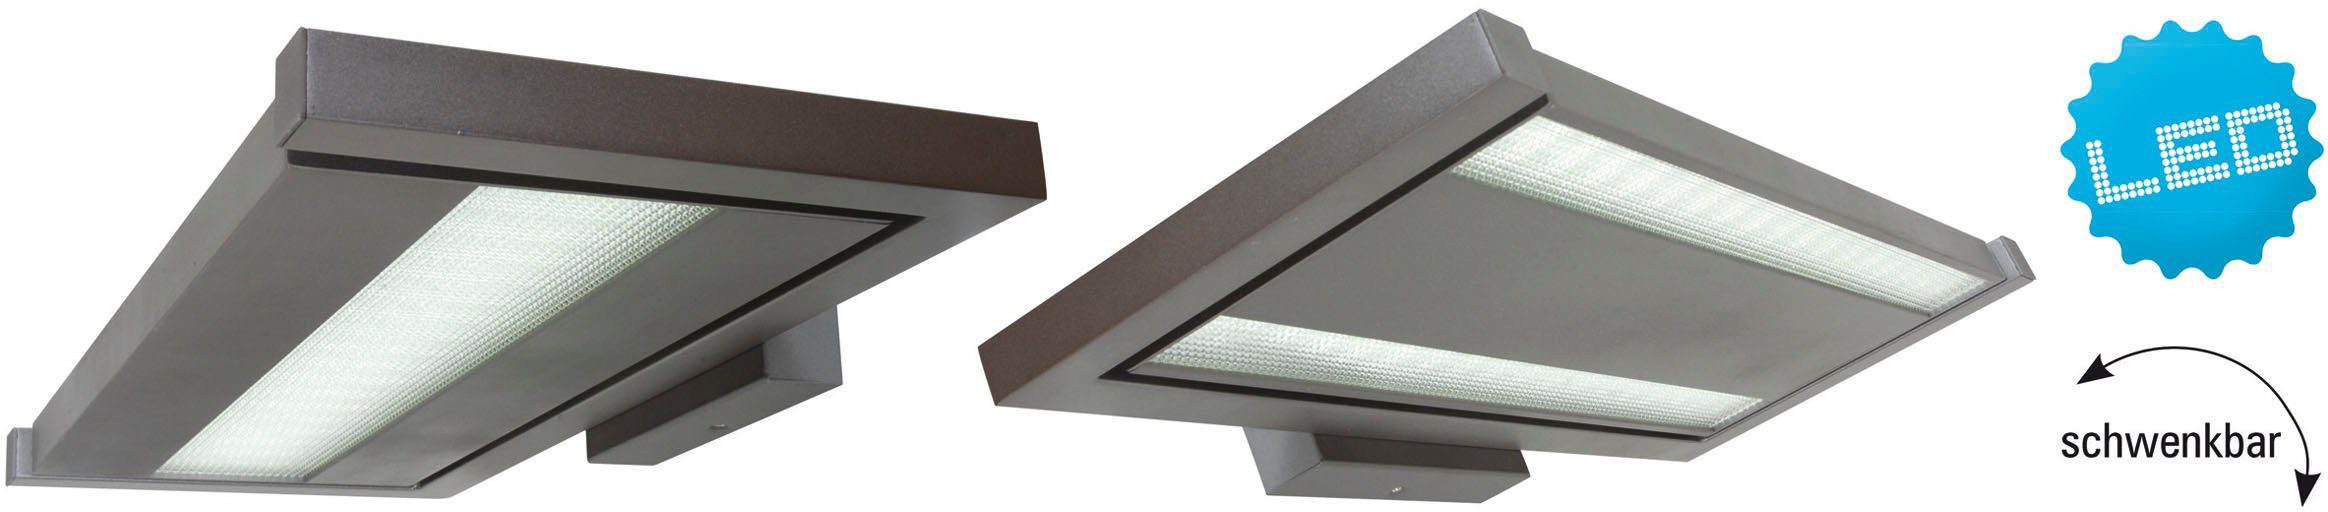 Neutralweiß, schwenkbar Bennet, Büro/Arbeitszimmer Wandleuchte grau direkt/indirekt integriert, Licht LED fest näve Aluguss LED